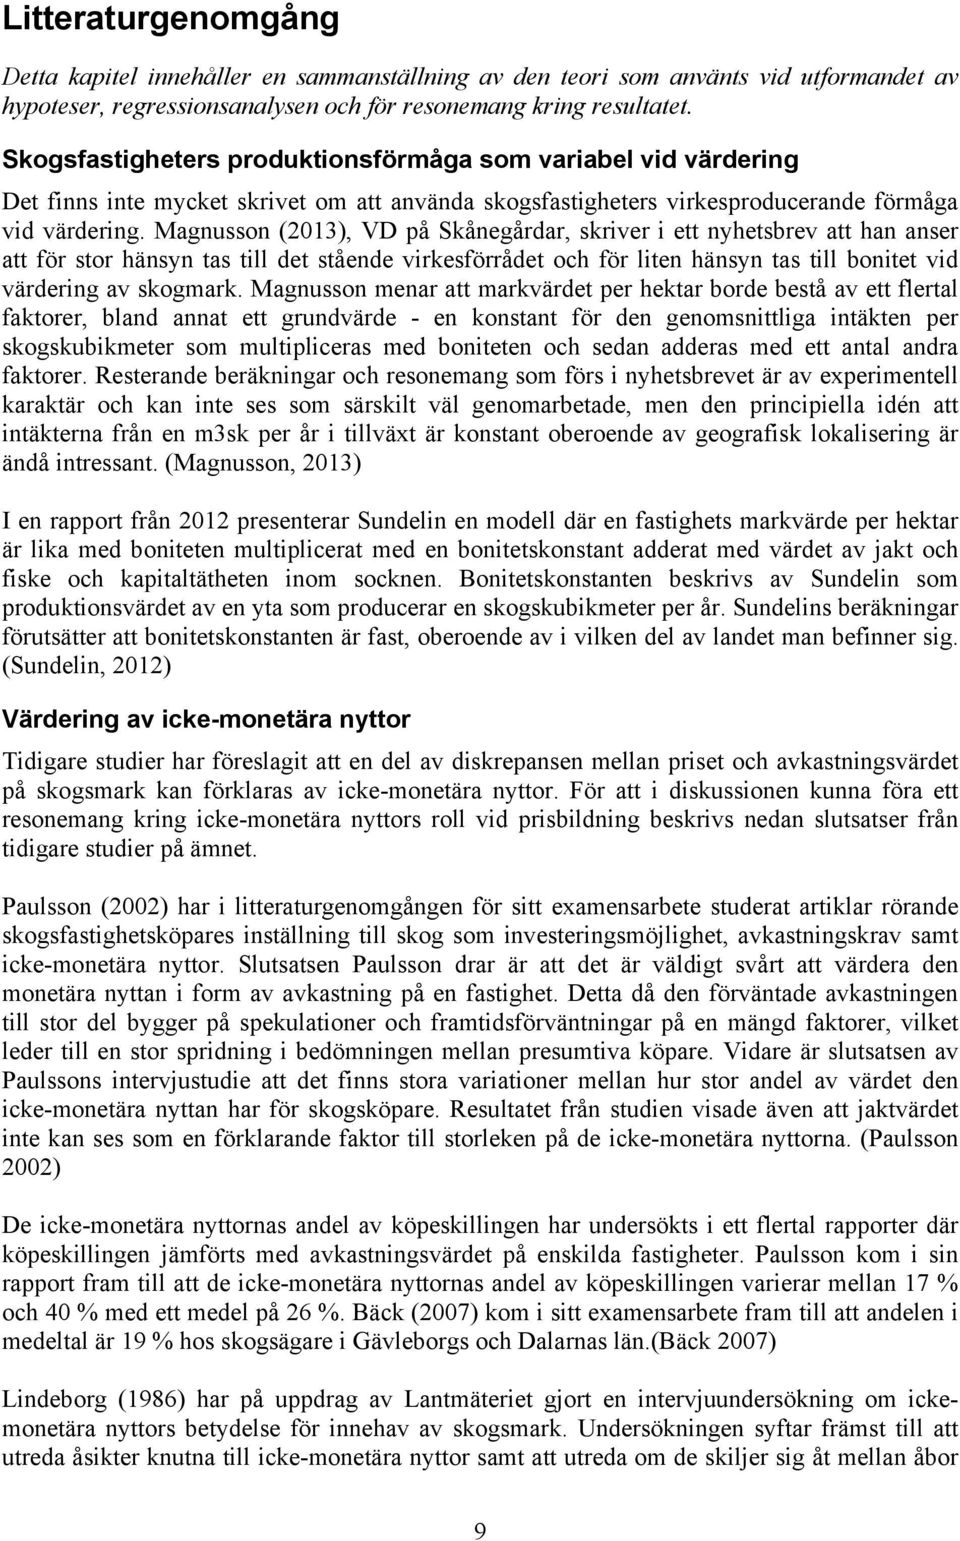 Magnusson (2013), VD på Skånegårdar, skriver i ett nyhetsbrev att han anser att för stor hänsyn tas till det stående virkesförrådet och för liten hänsyn tas till bonitet vid värdering av skogmark.